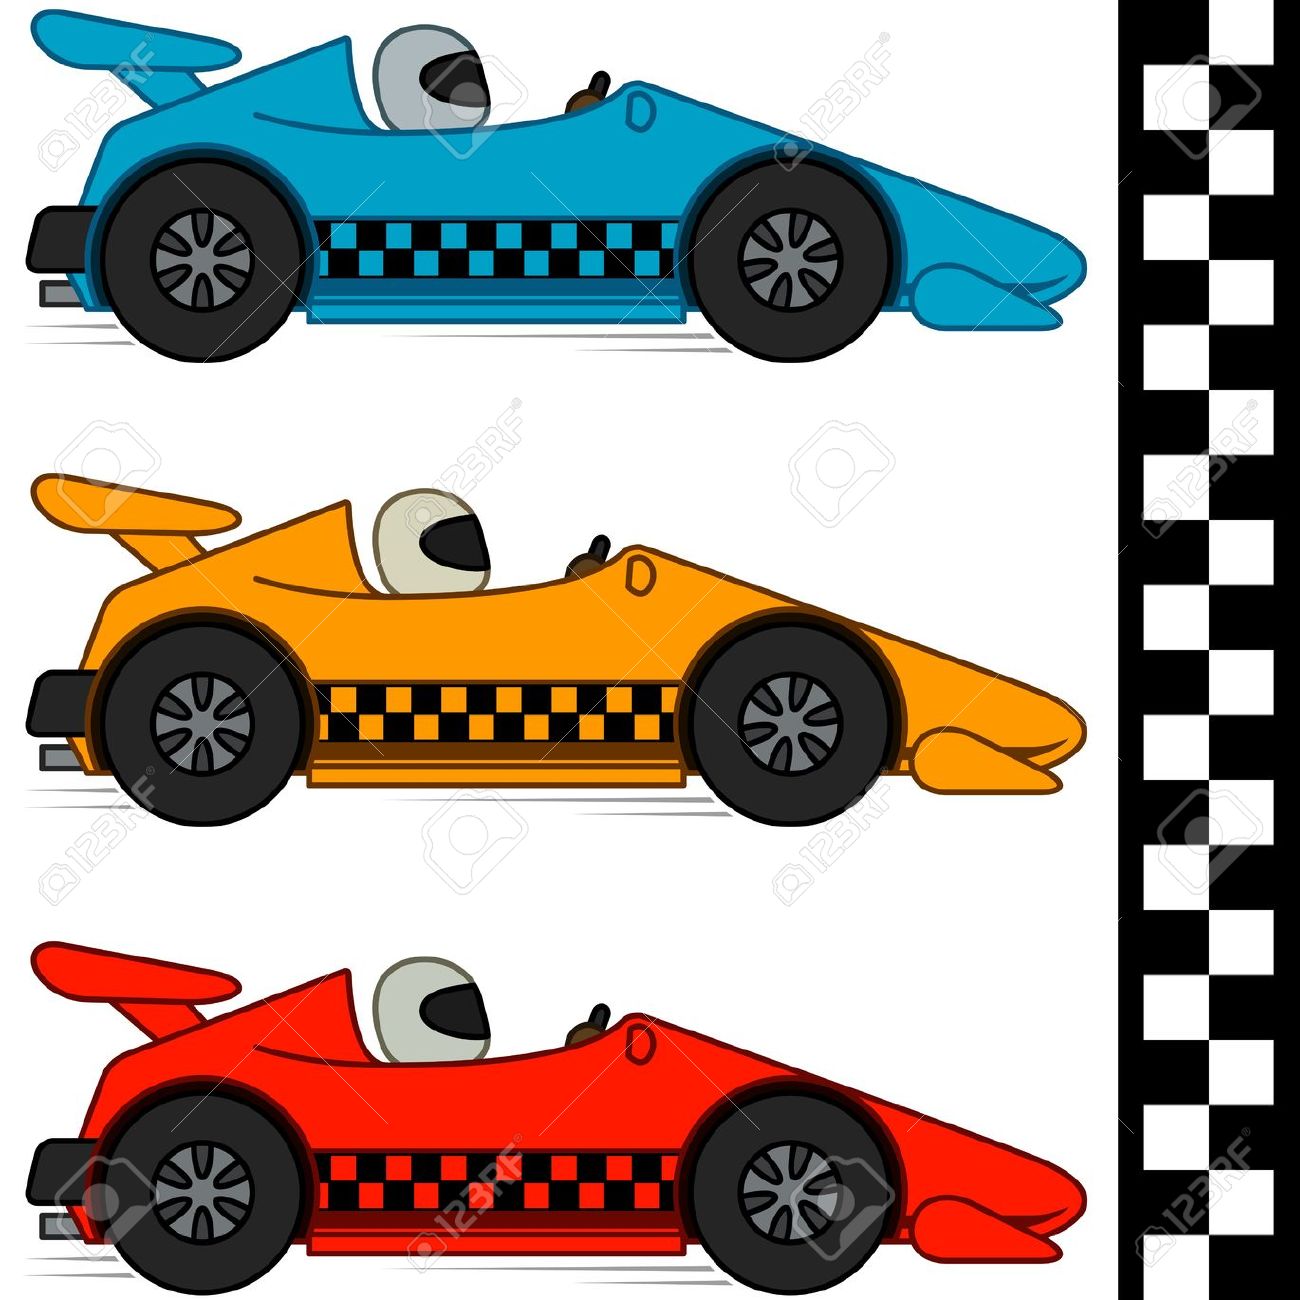 cartoon race car clipart - Clip Art Library